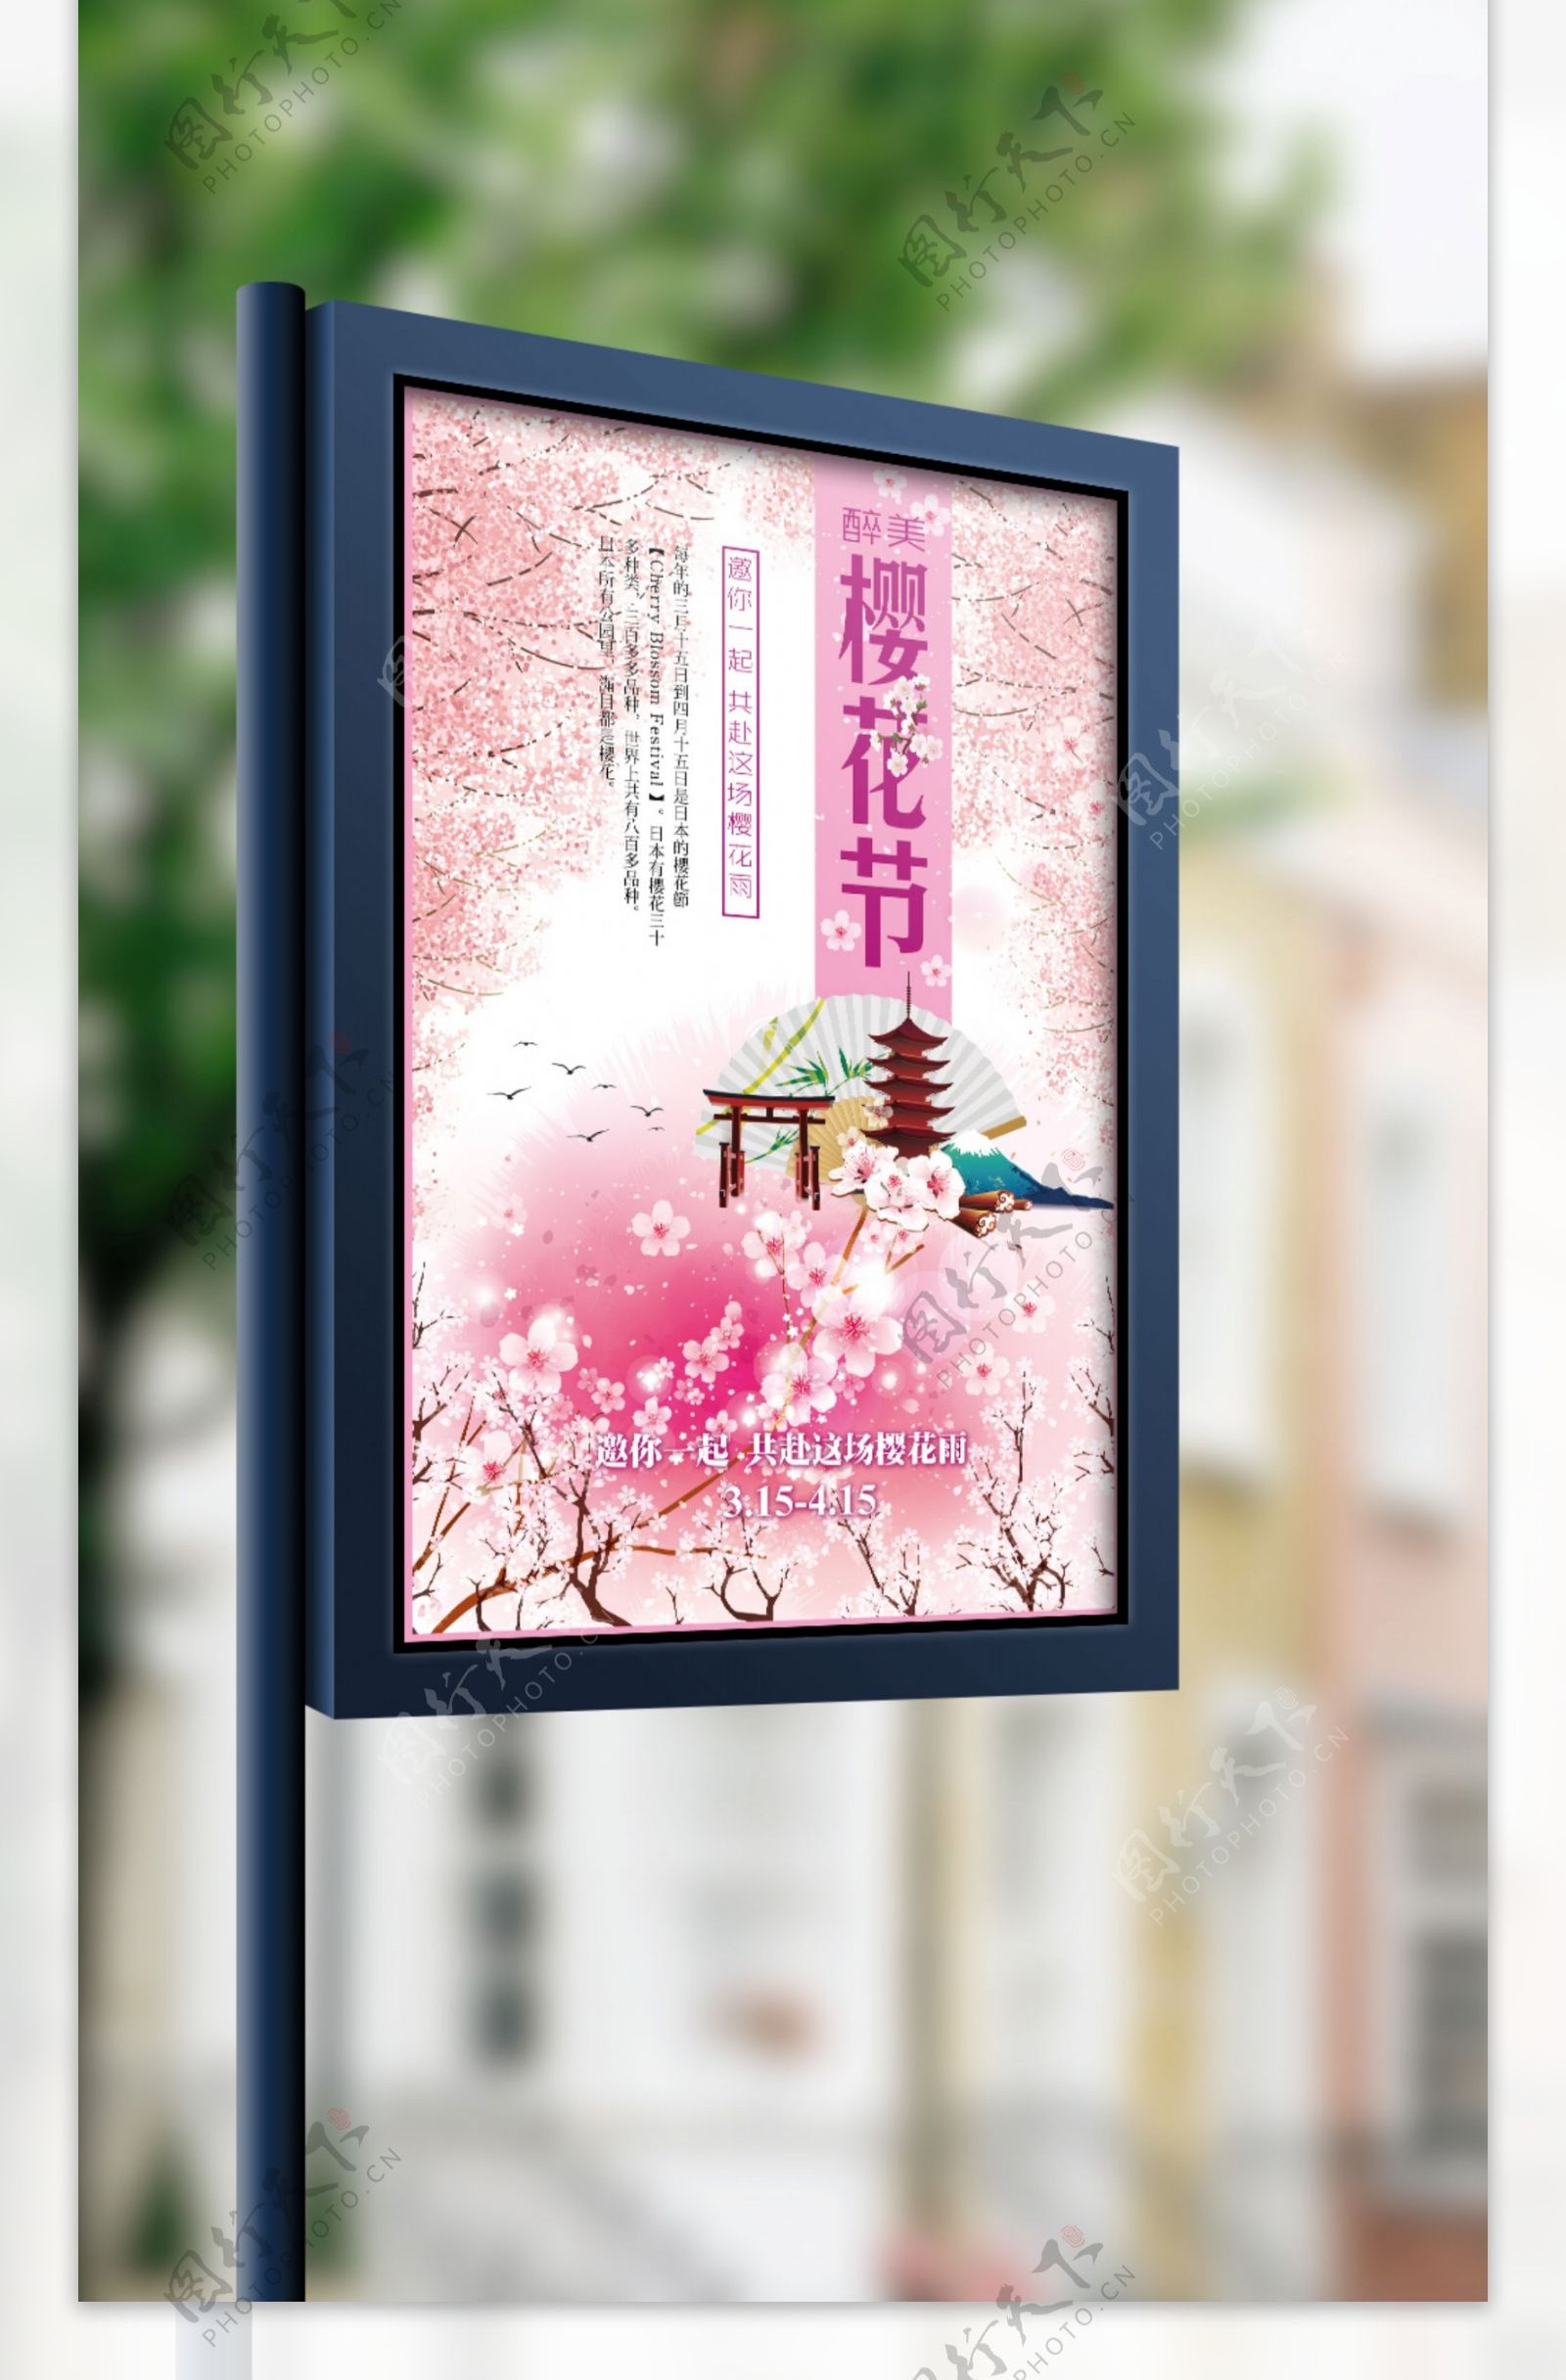 粉色浪漫樱花节矢量海报模板